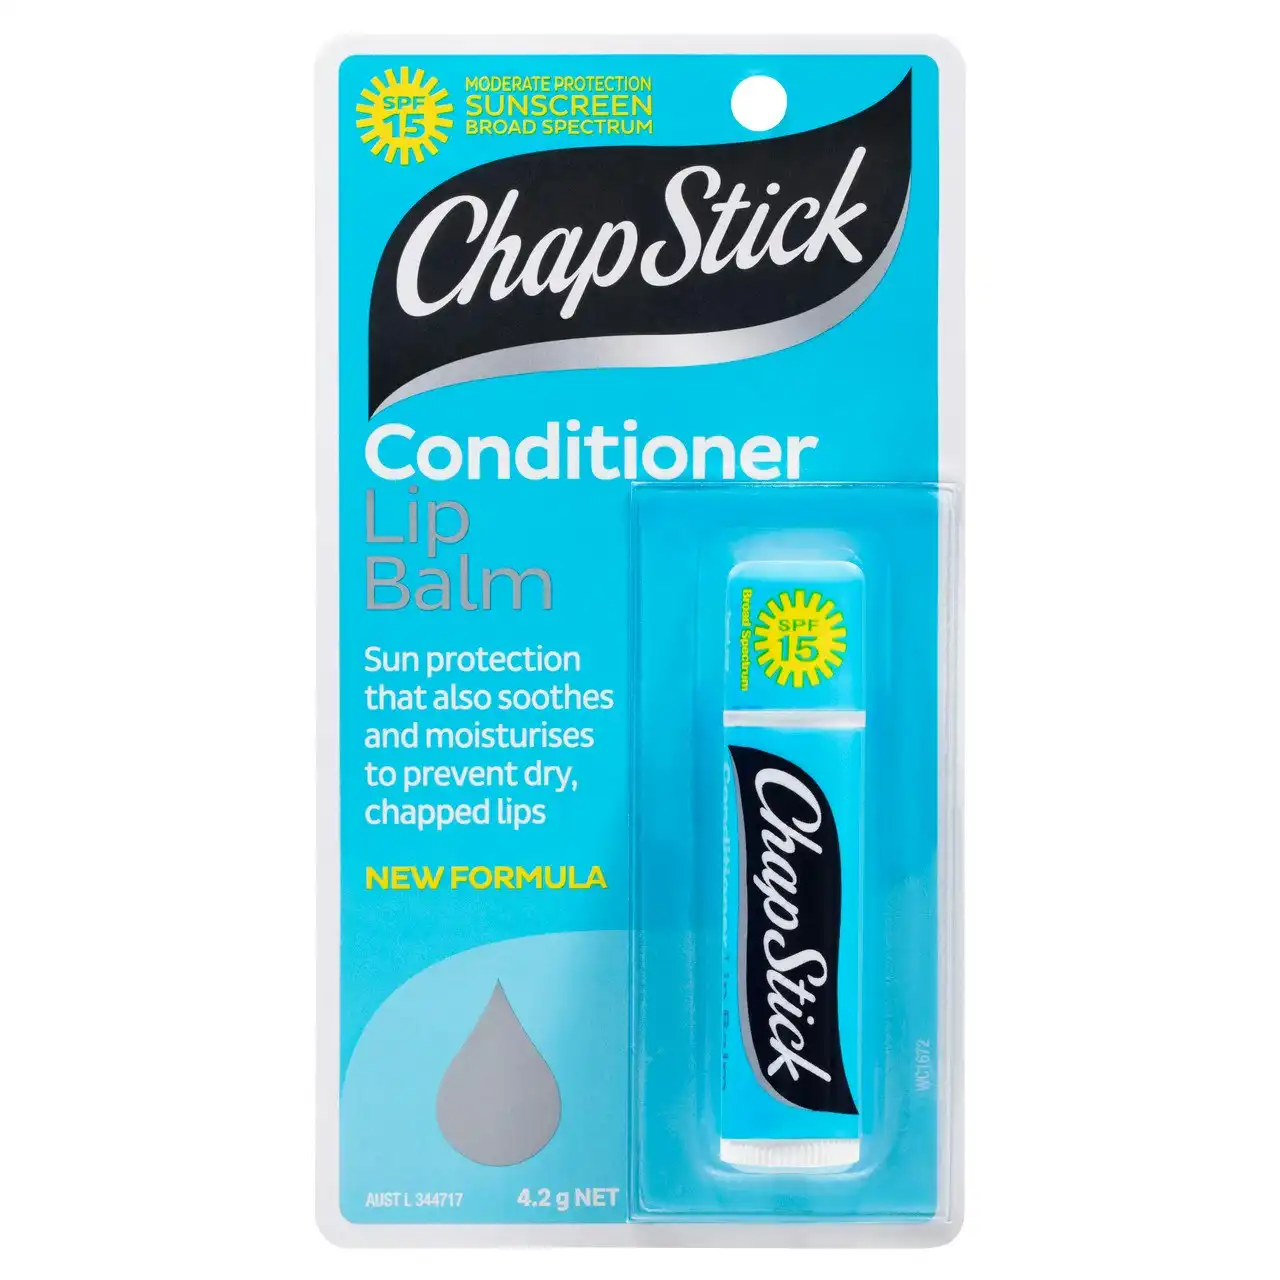 ChapStick Conditioner Lip Balm 4.2g